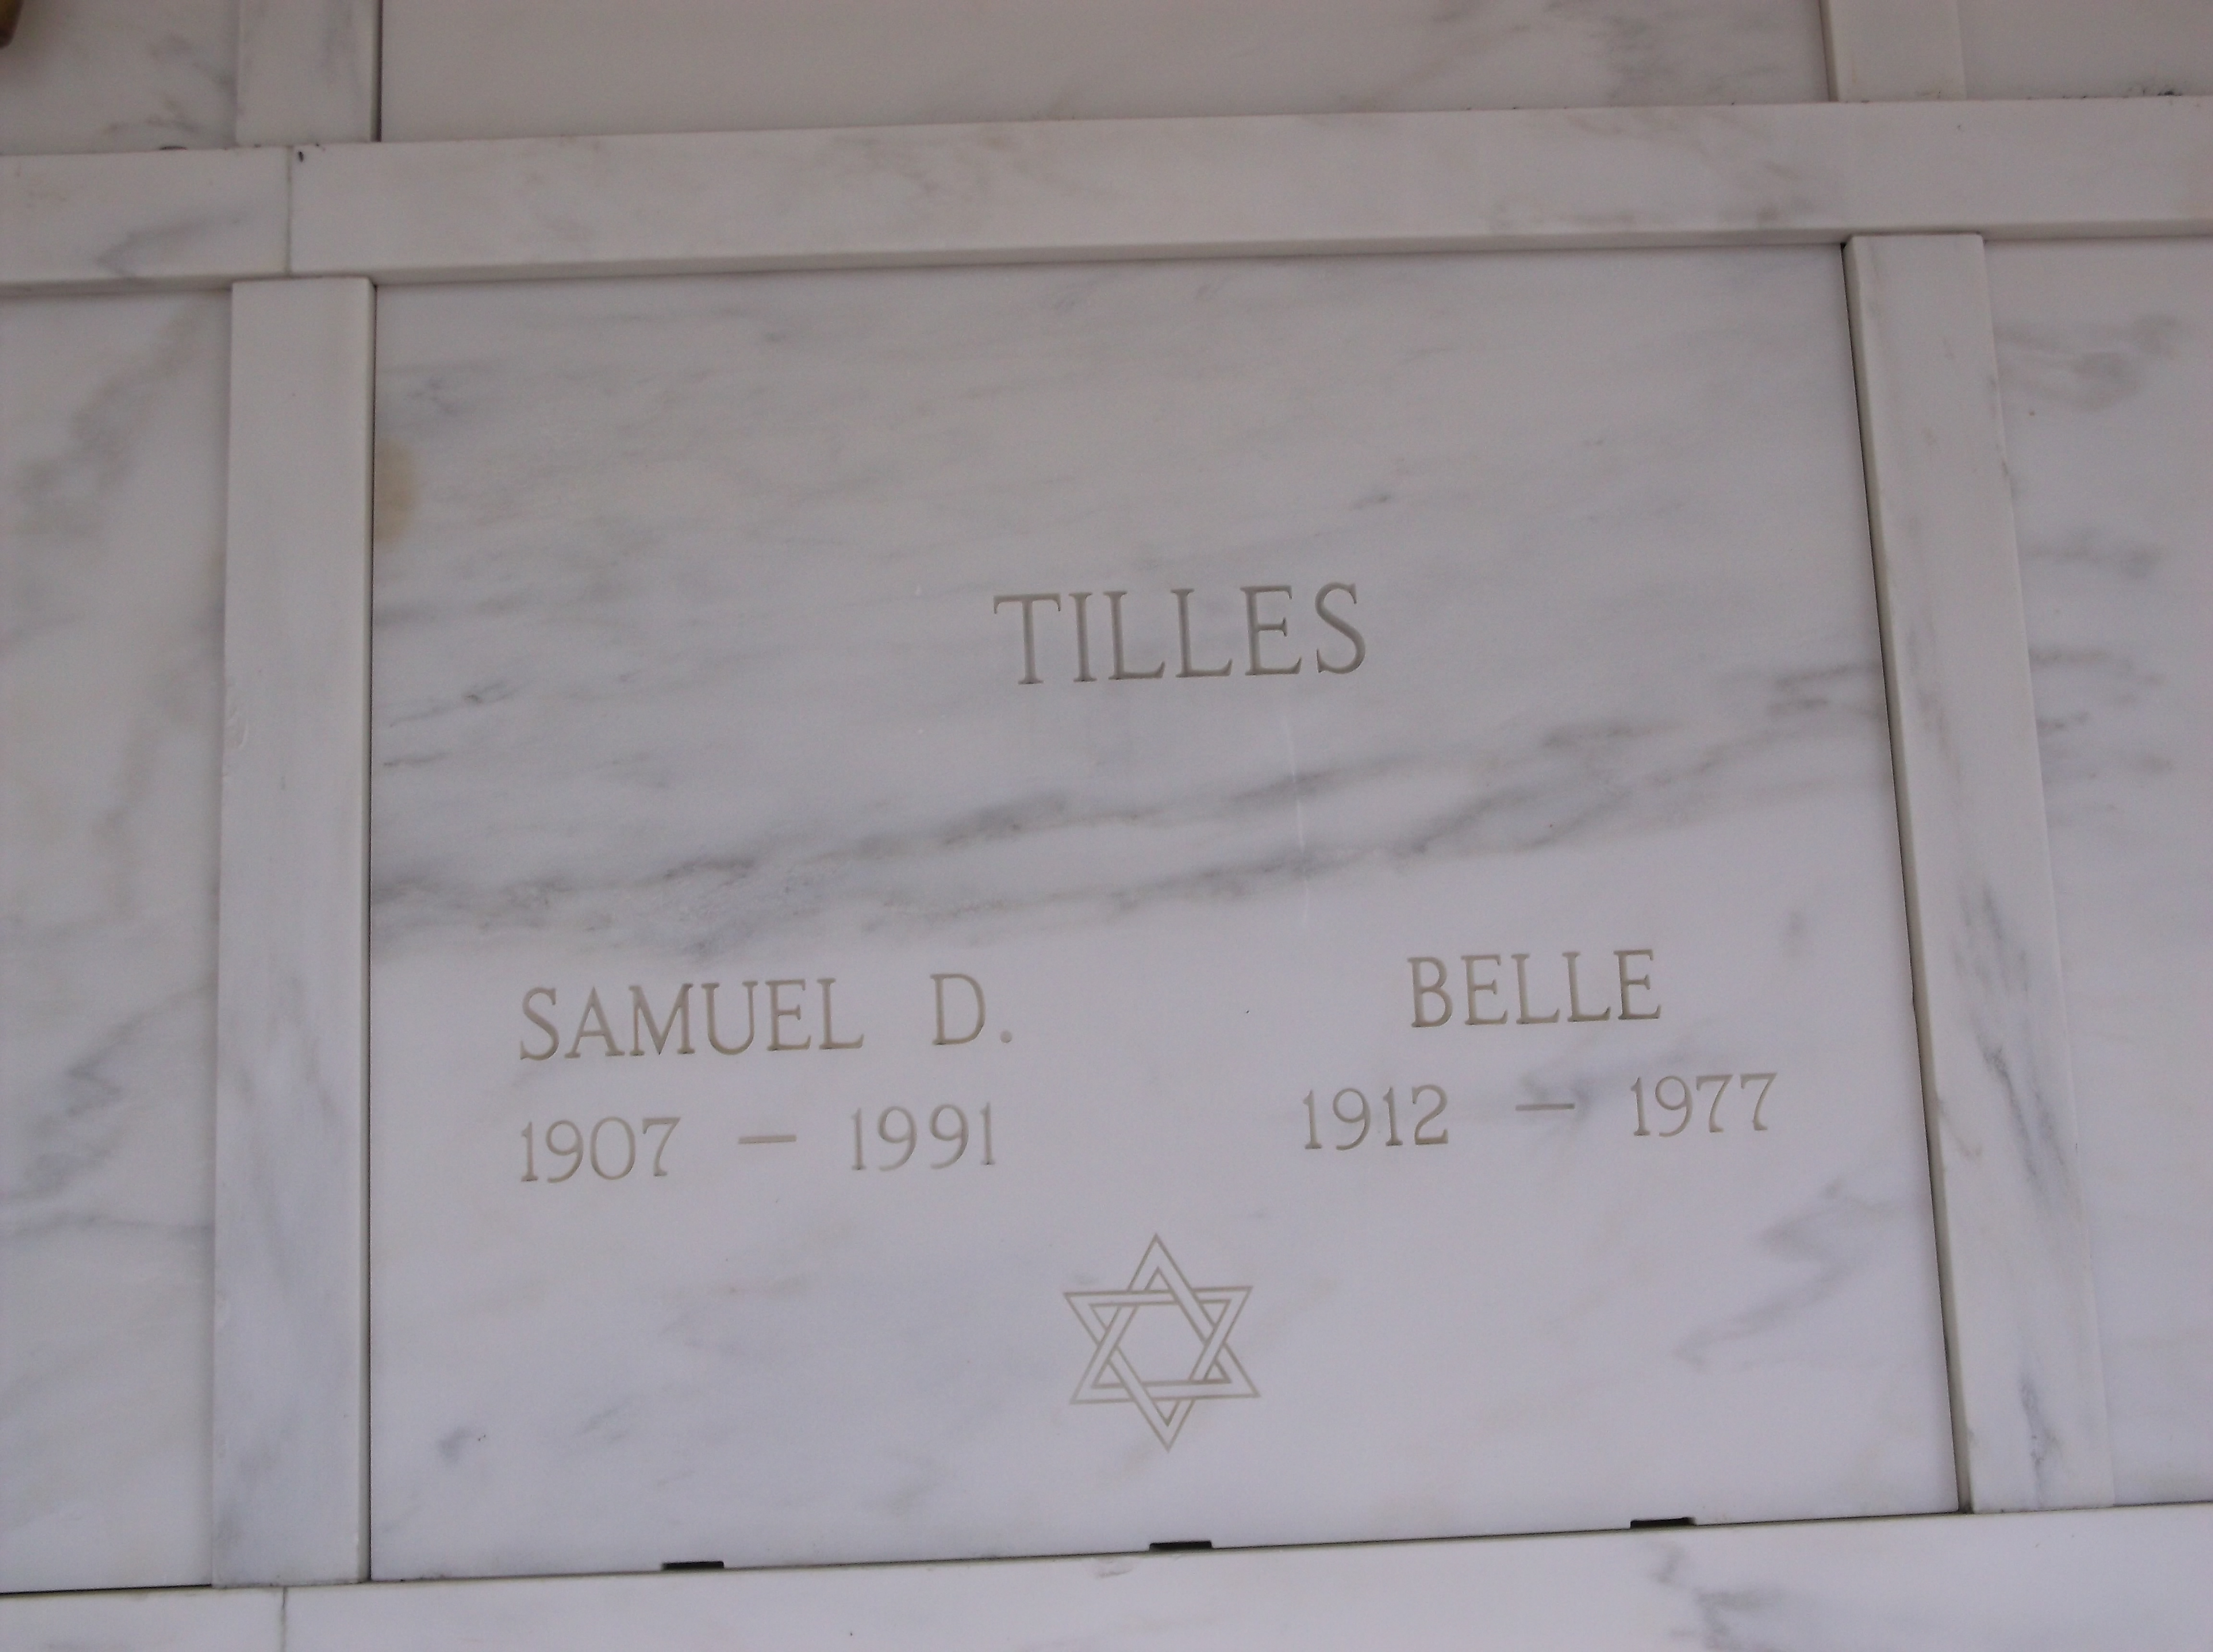 Samuel D Tilles